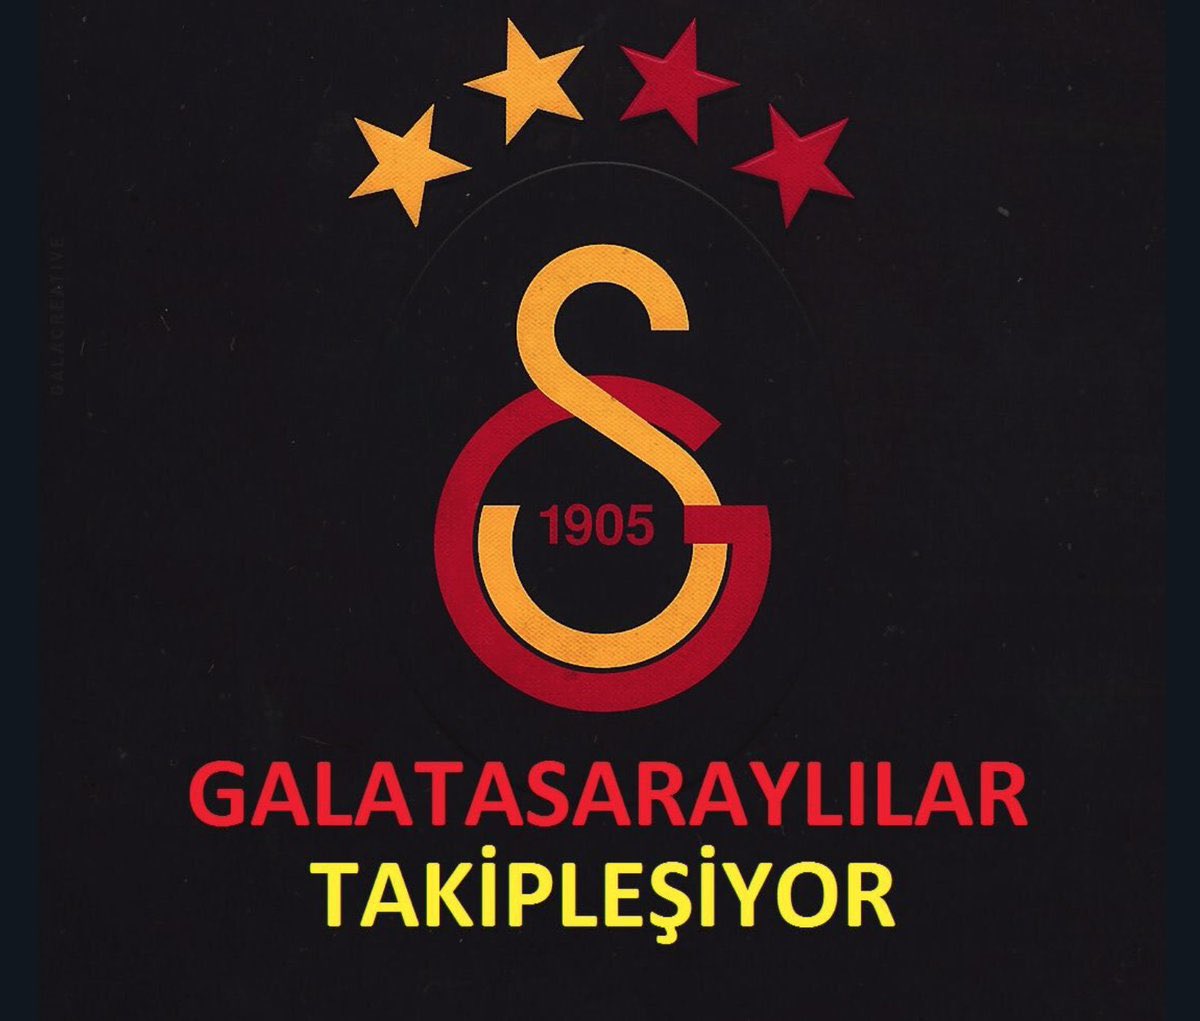 🚨 Galatasaray'lı hesaplar birbirini takip etsin çok fazla kapanan hesap var 🔥🦁

Takip edeni takip ediyoruz 💛♥️

🦁 @_melekozdmr
🦁 @AslaniceDilruba

Biz biriz, hep birlikte daha güçlüyüz  ✊

#GslilerTakipleşiyor
#GALATASARAYlılarTakipleşiyor